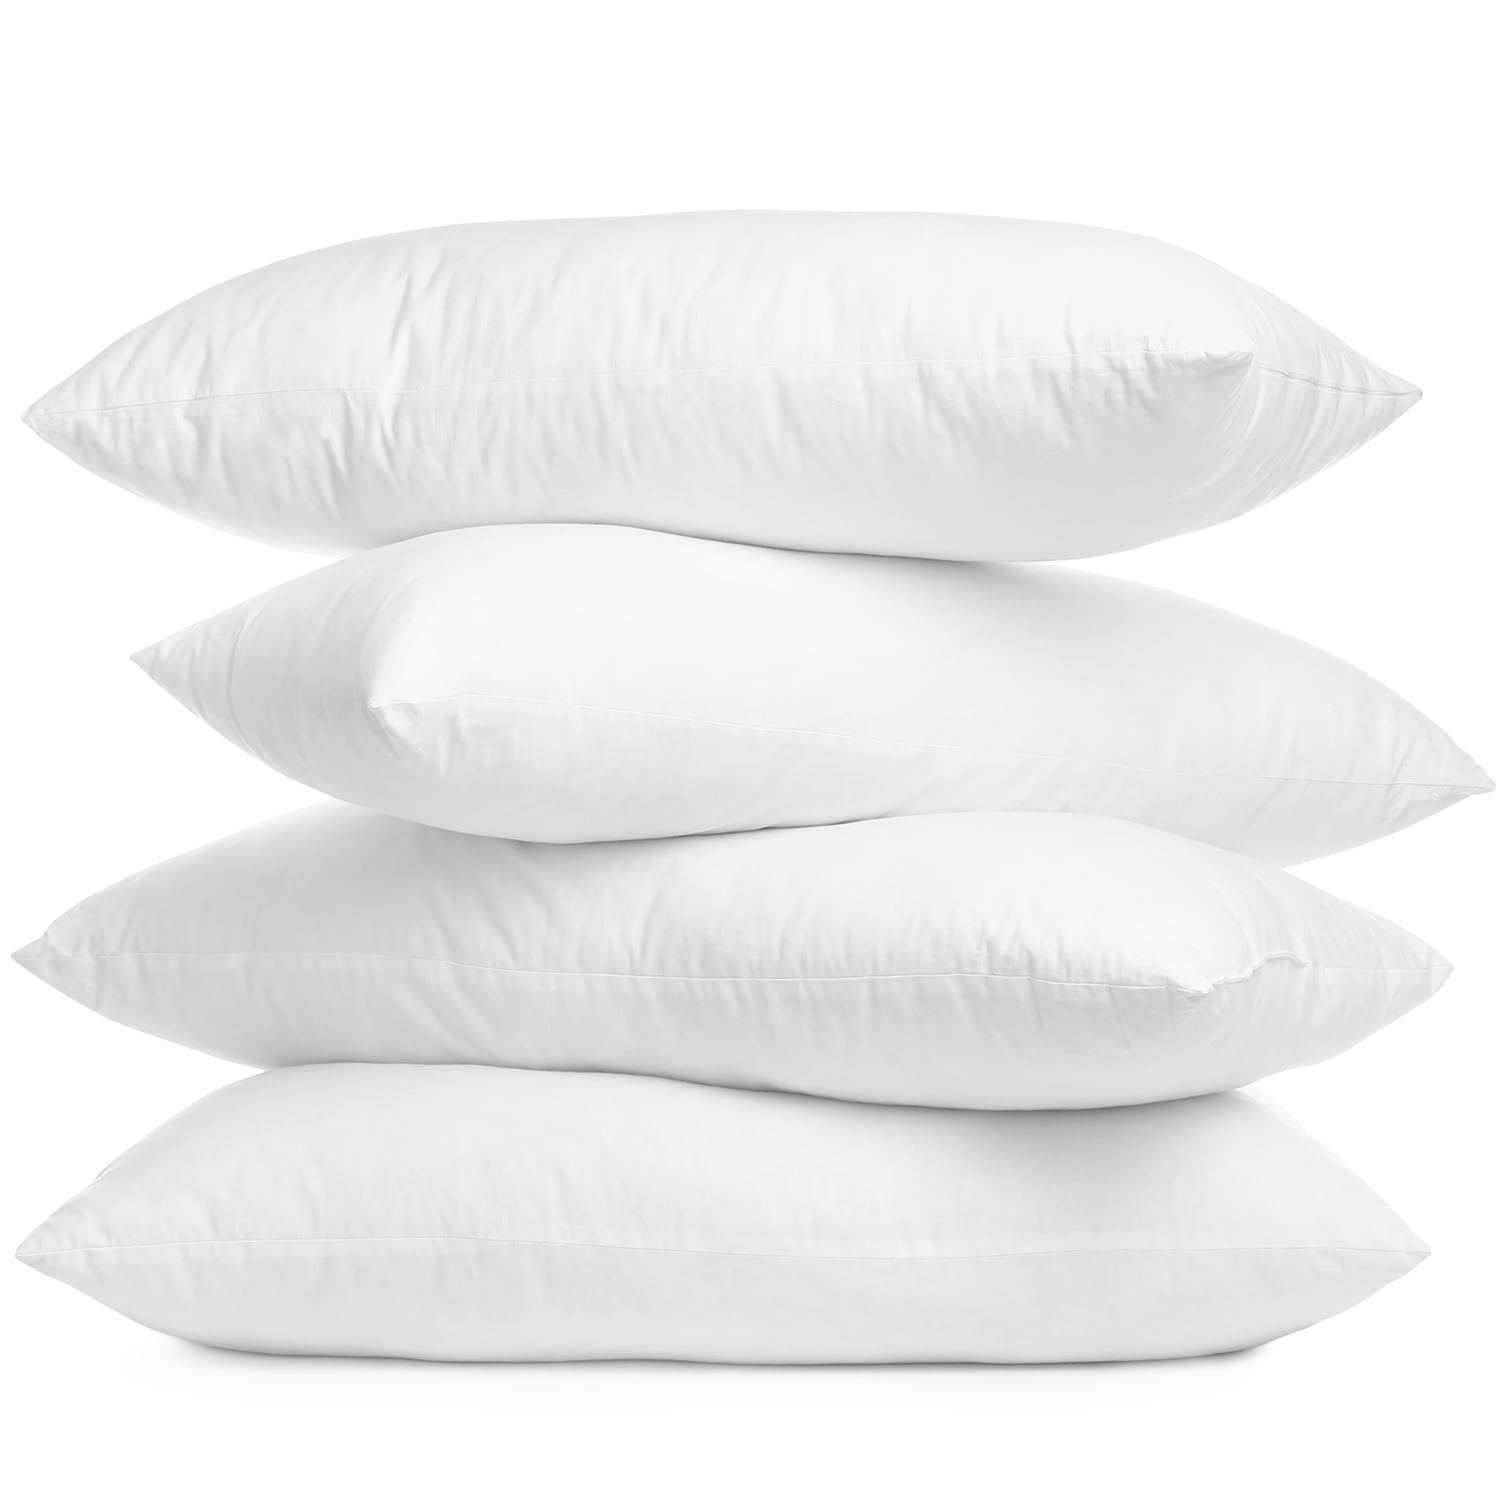 Lux Decor Collection White Microfiber Throw Pillows (16x16